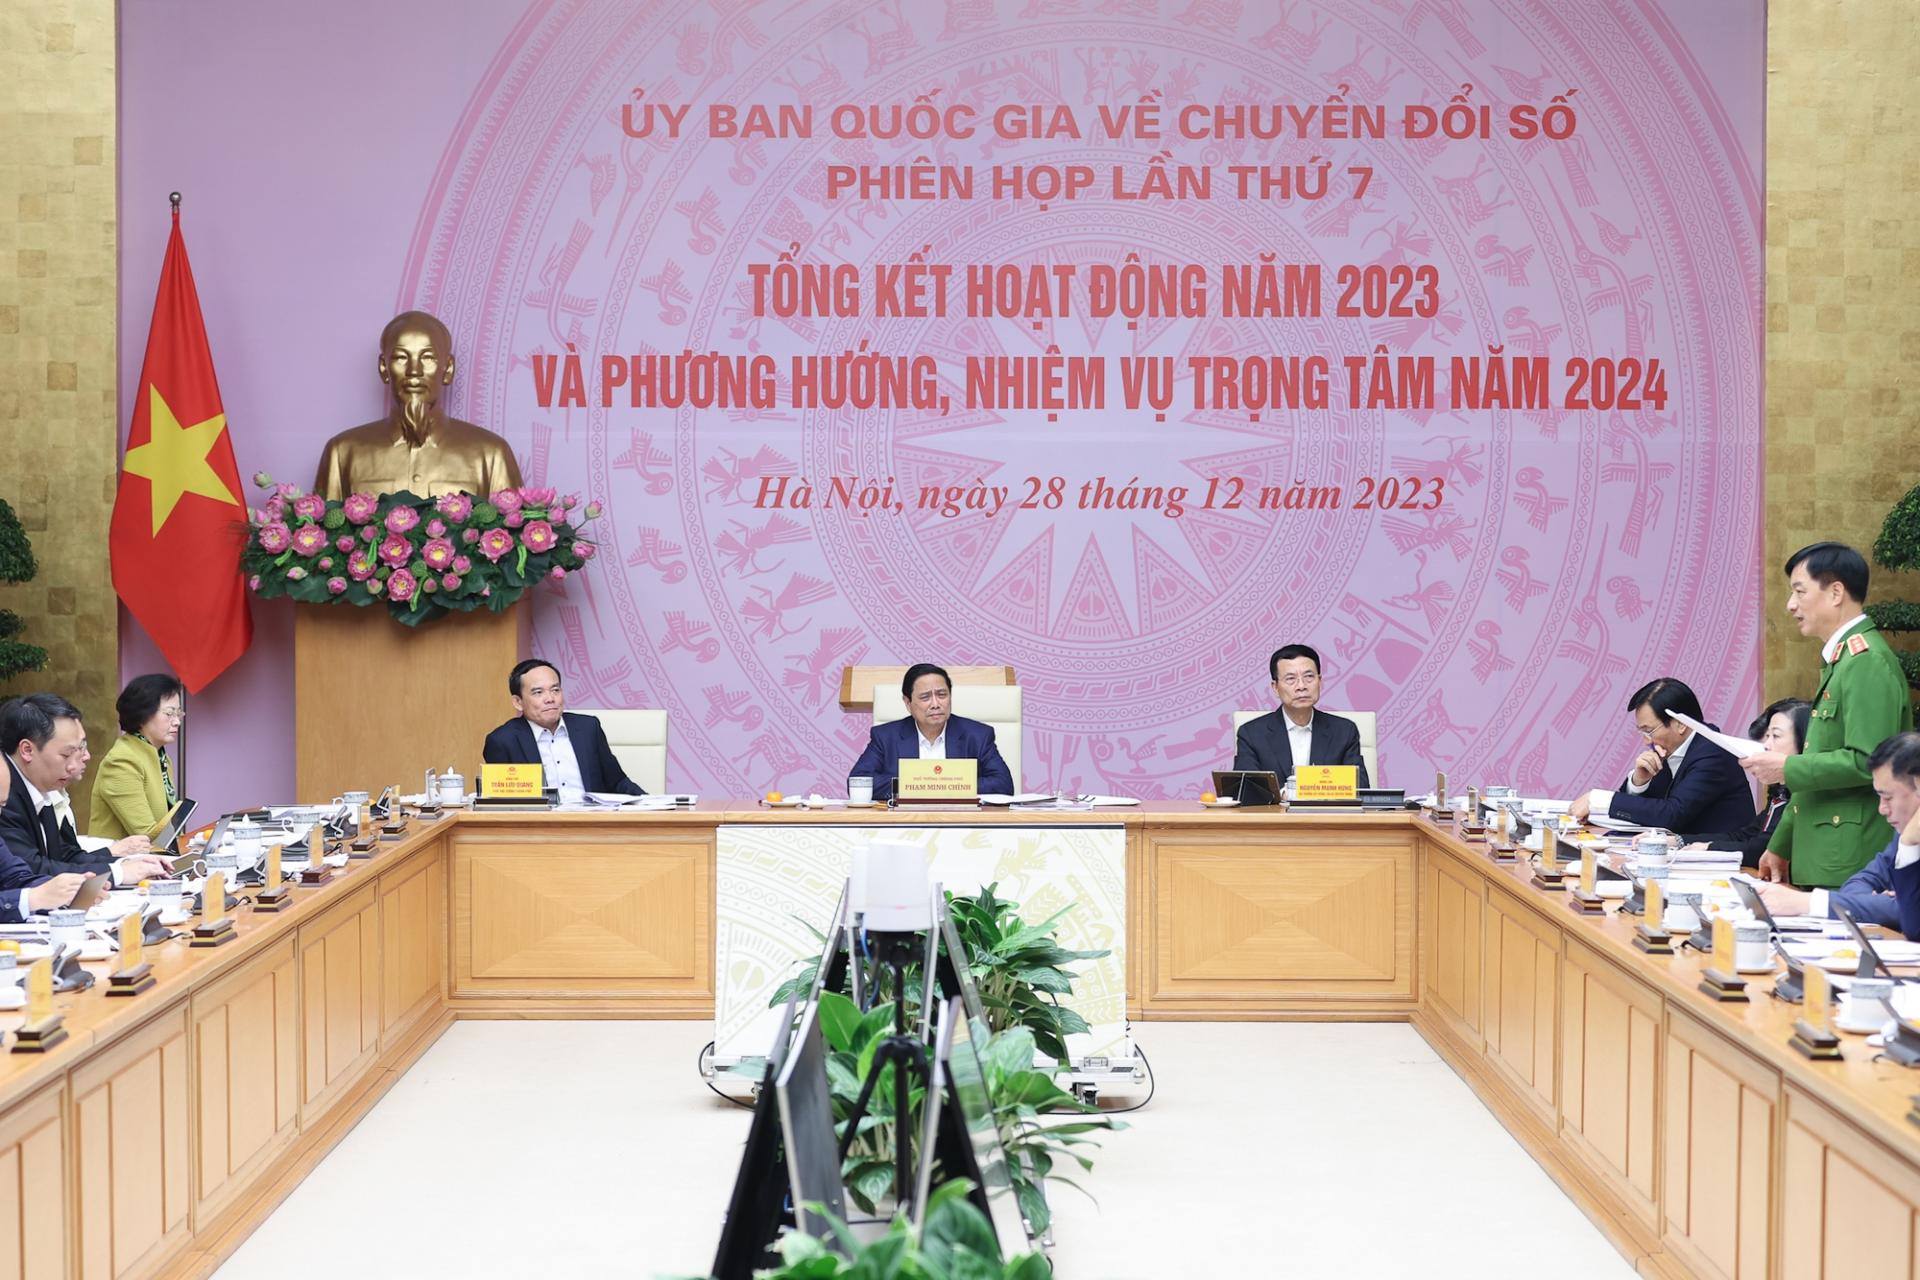 Thủ tướng Phạm Minh Chính, Chủ tịch Ủy ban Quốc gia về chuyển đổi số, chủ trì phiên họp thứ 7 của Ủy ban, tổng kết hoạt động năm 2023 và phương hướng, nhiệm vụ trọng tâm năm 2024 - Ảnh: VGP